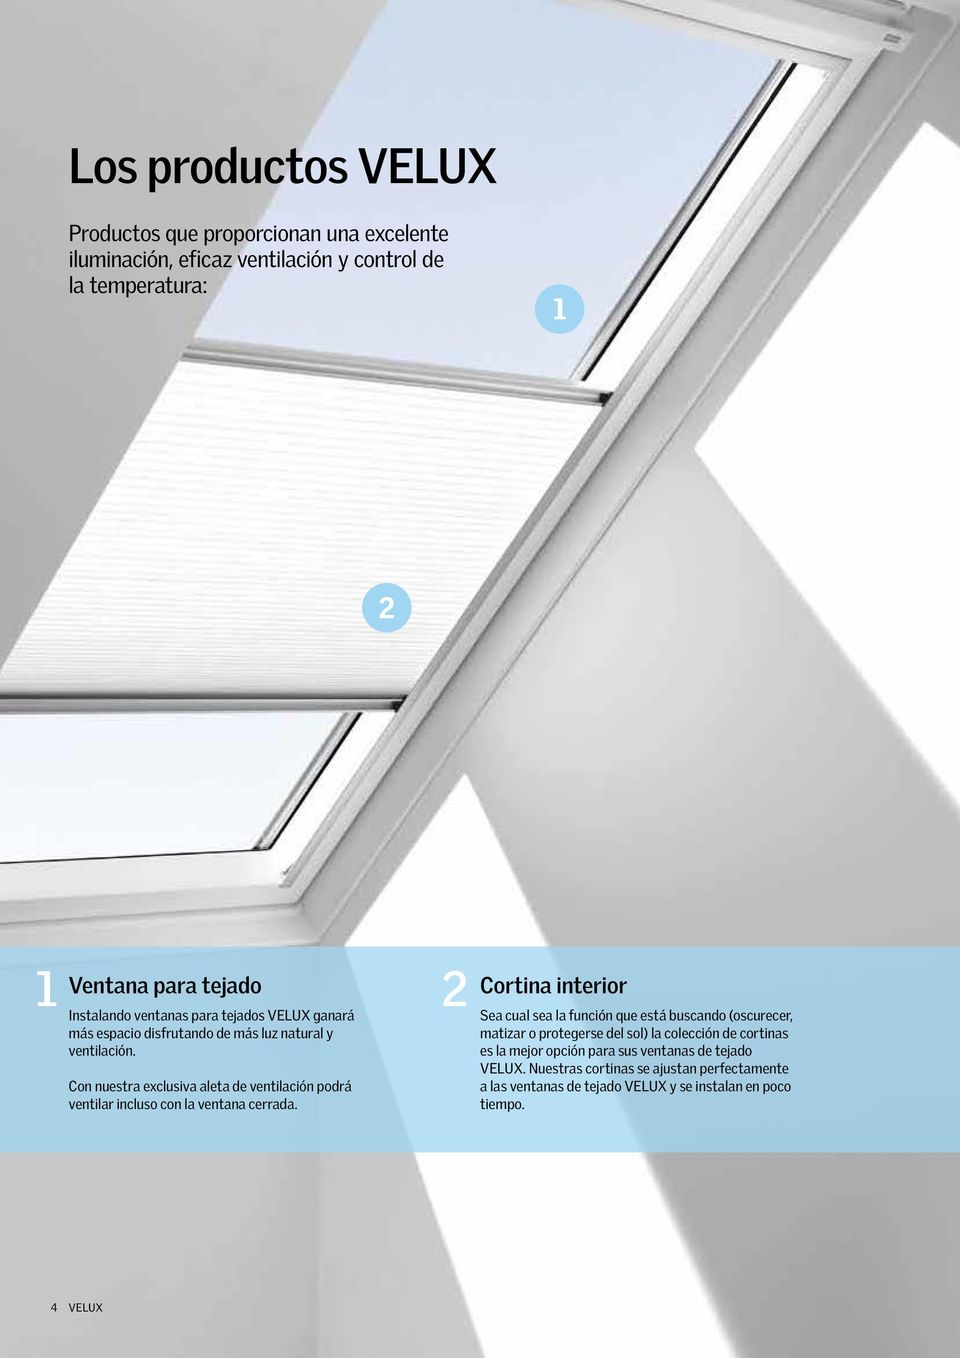 Con nuestra exclusiva aleta de ventilación podrá ventilar incluso con la ventana cerrada.